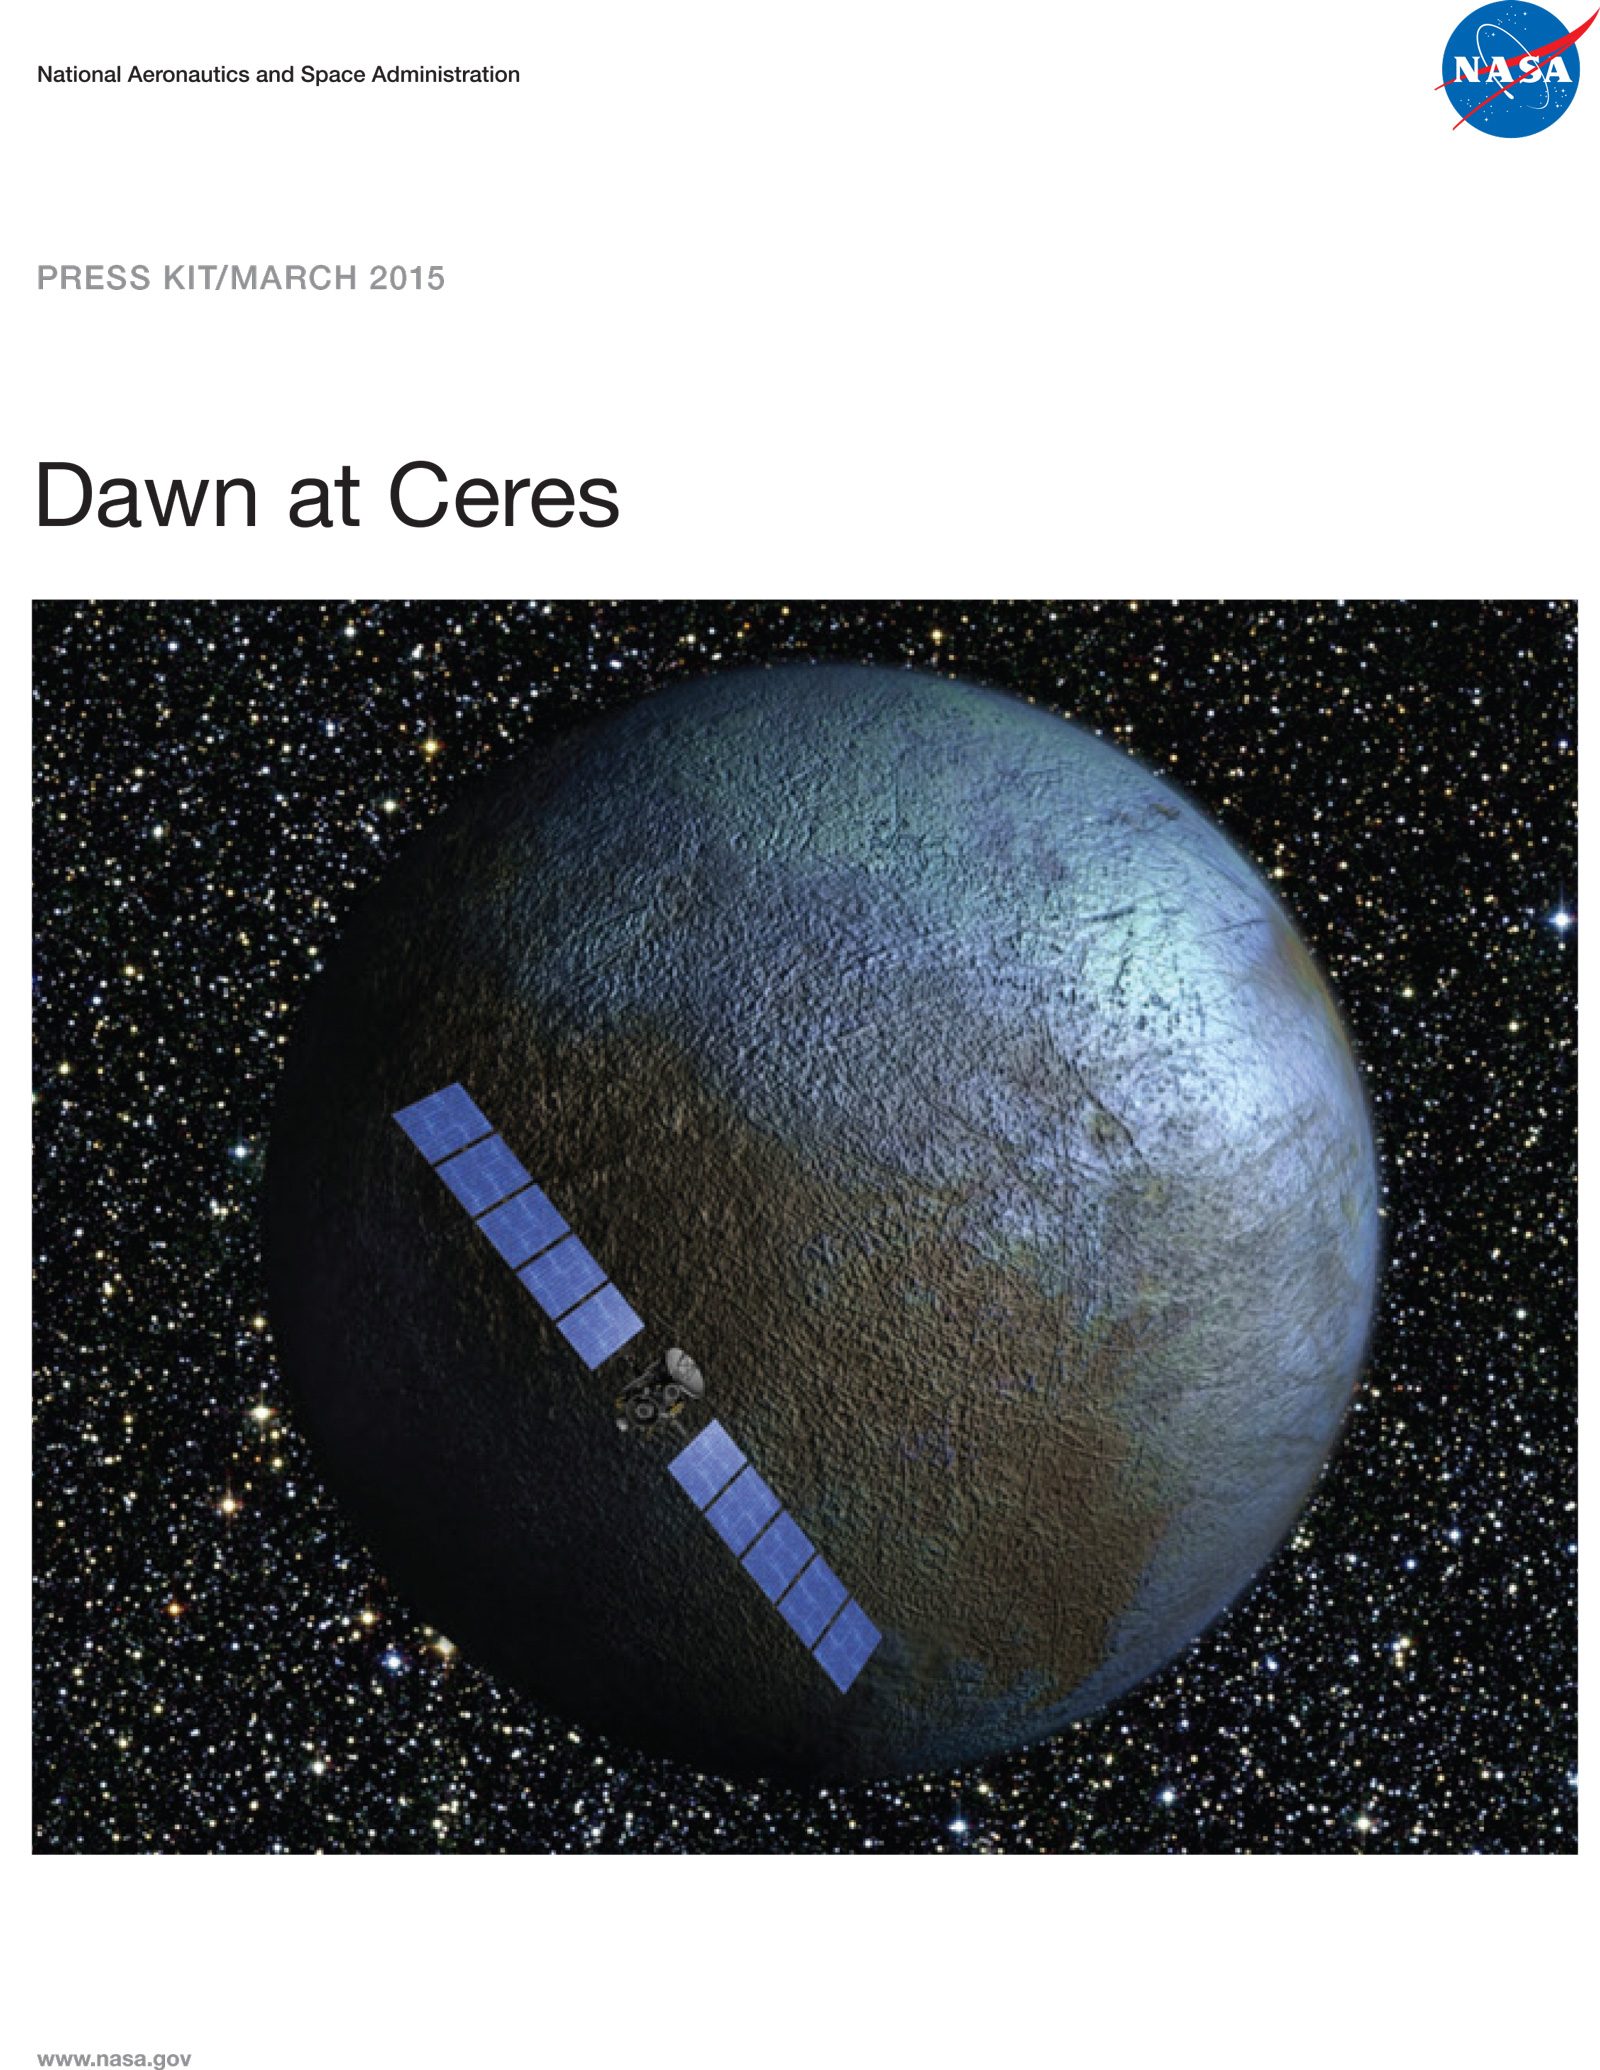 Dawn at Ceres press kit